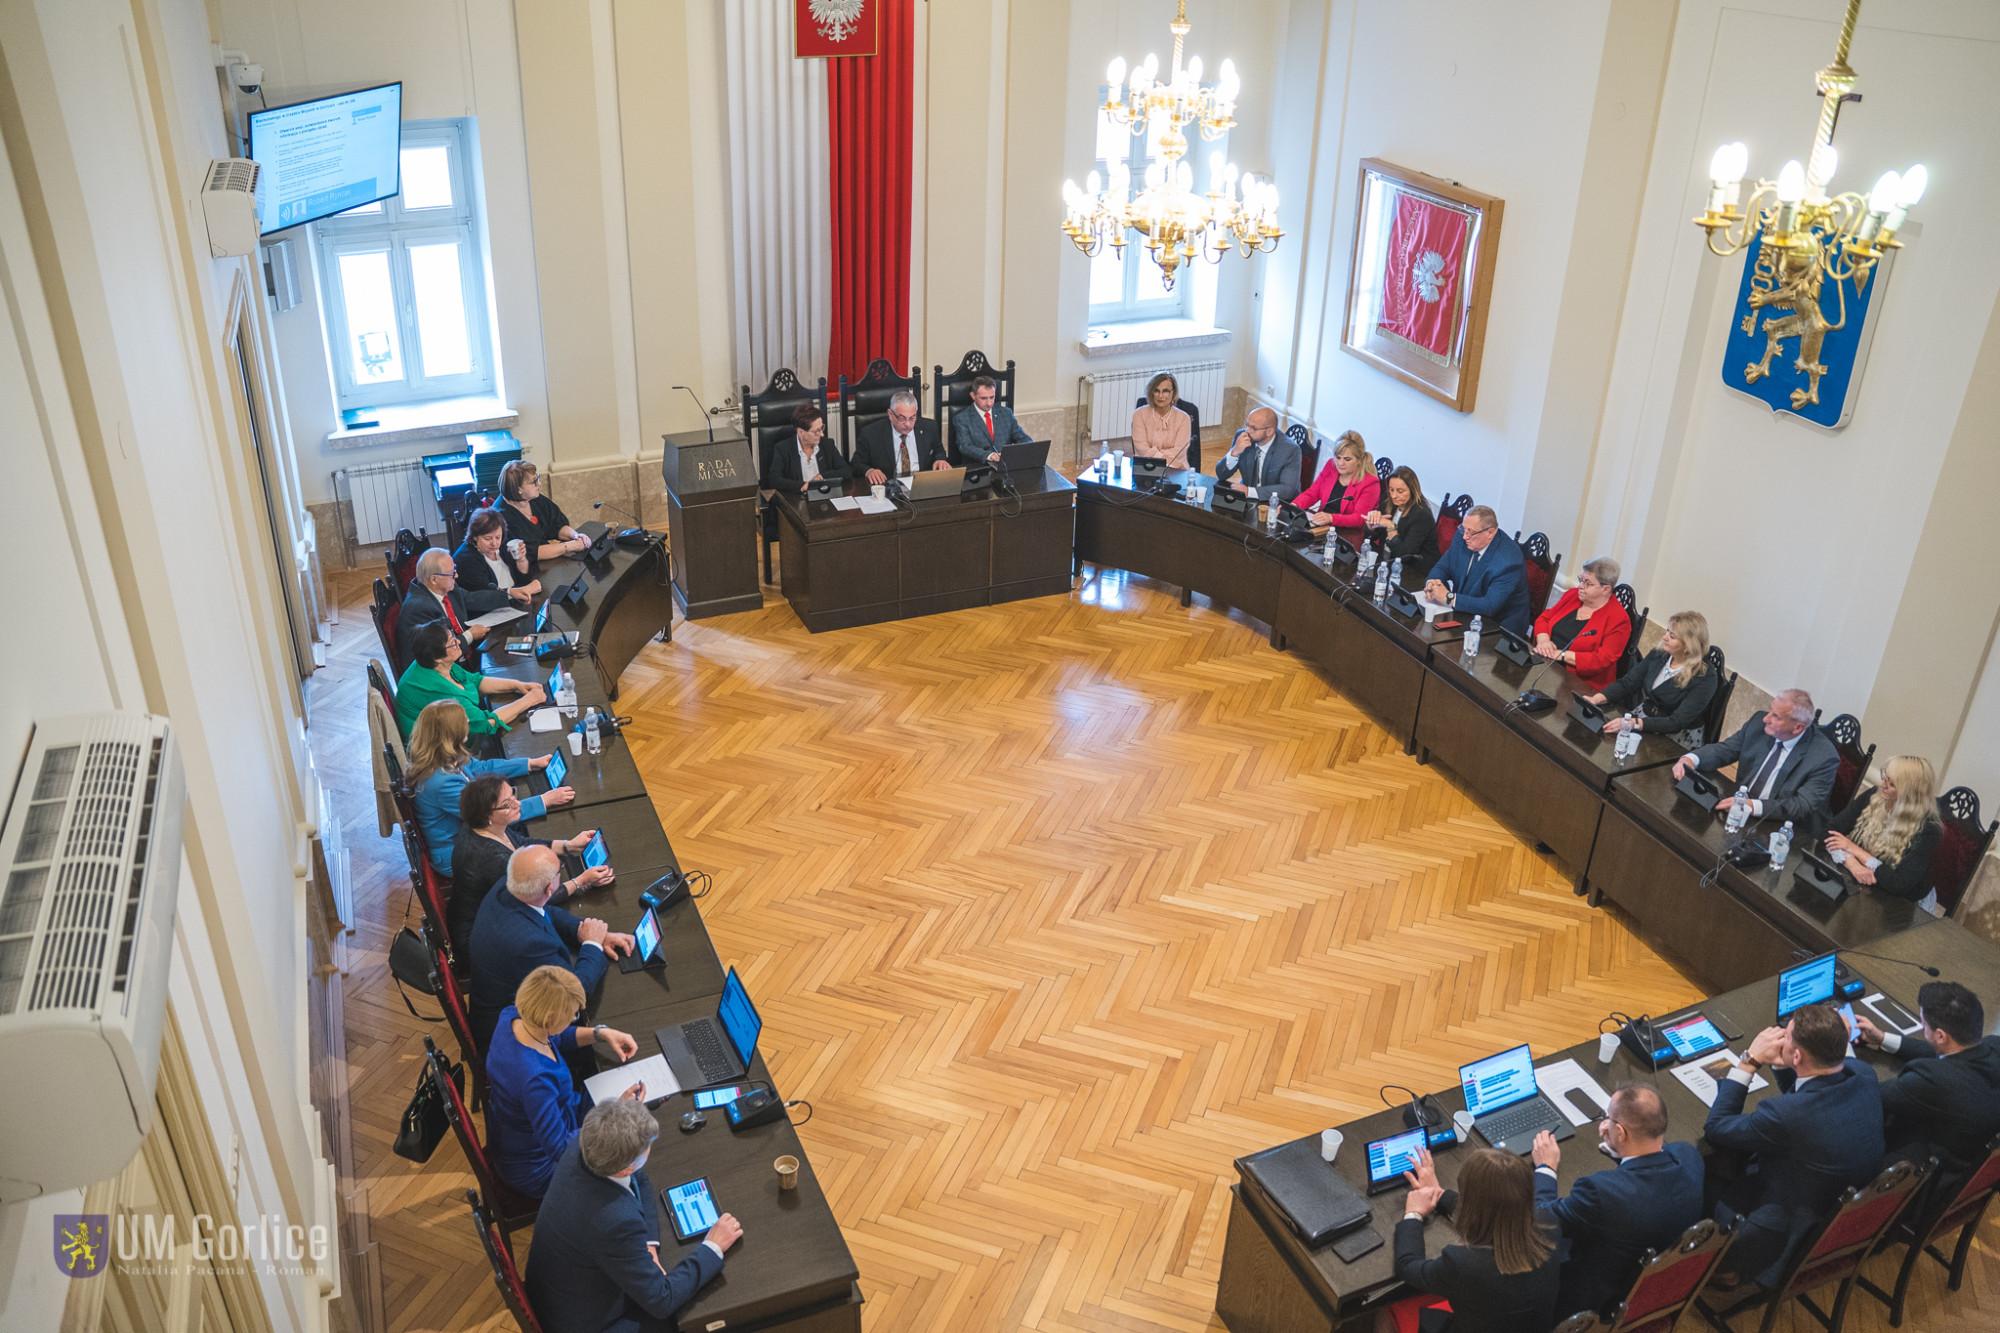 LXXII sesja Rady Miasta Gorlice - widok z góry